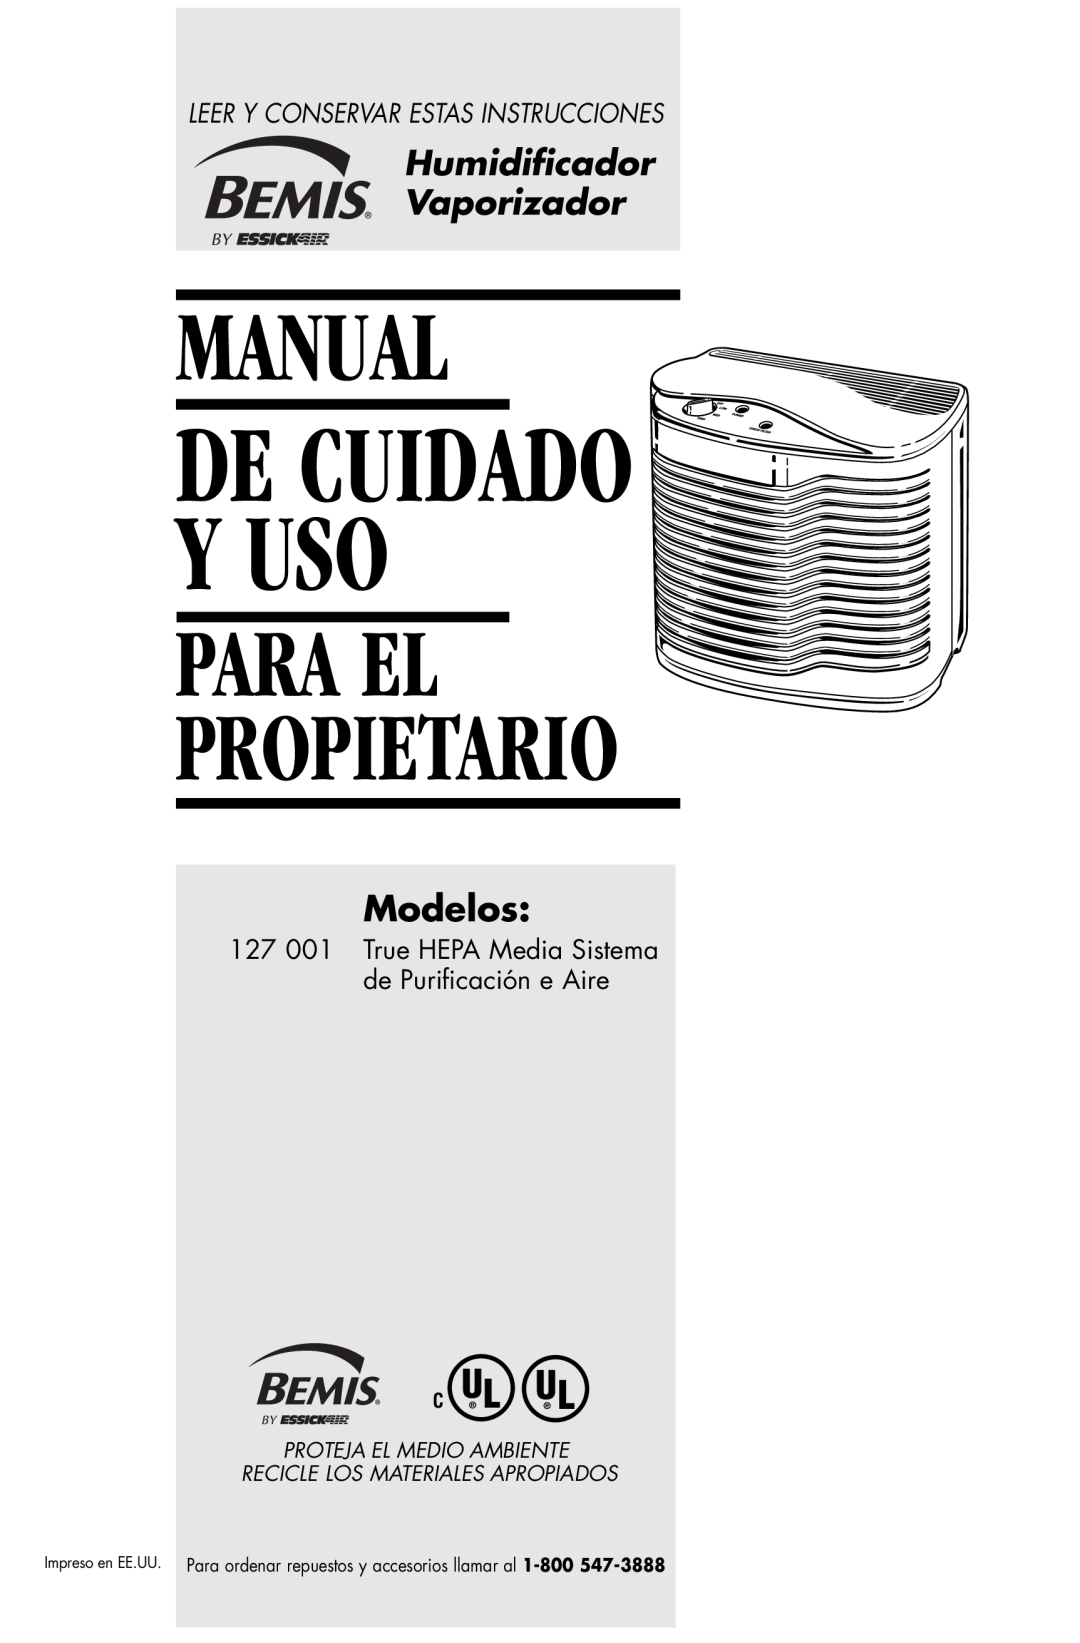 Essick Air 127-001 manual Manual, Para El Propietario, De Cuidado Y Uso, Humidiﬁcador Vaporizador, Modelos 